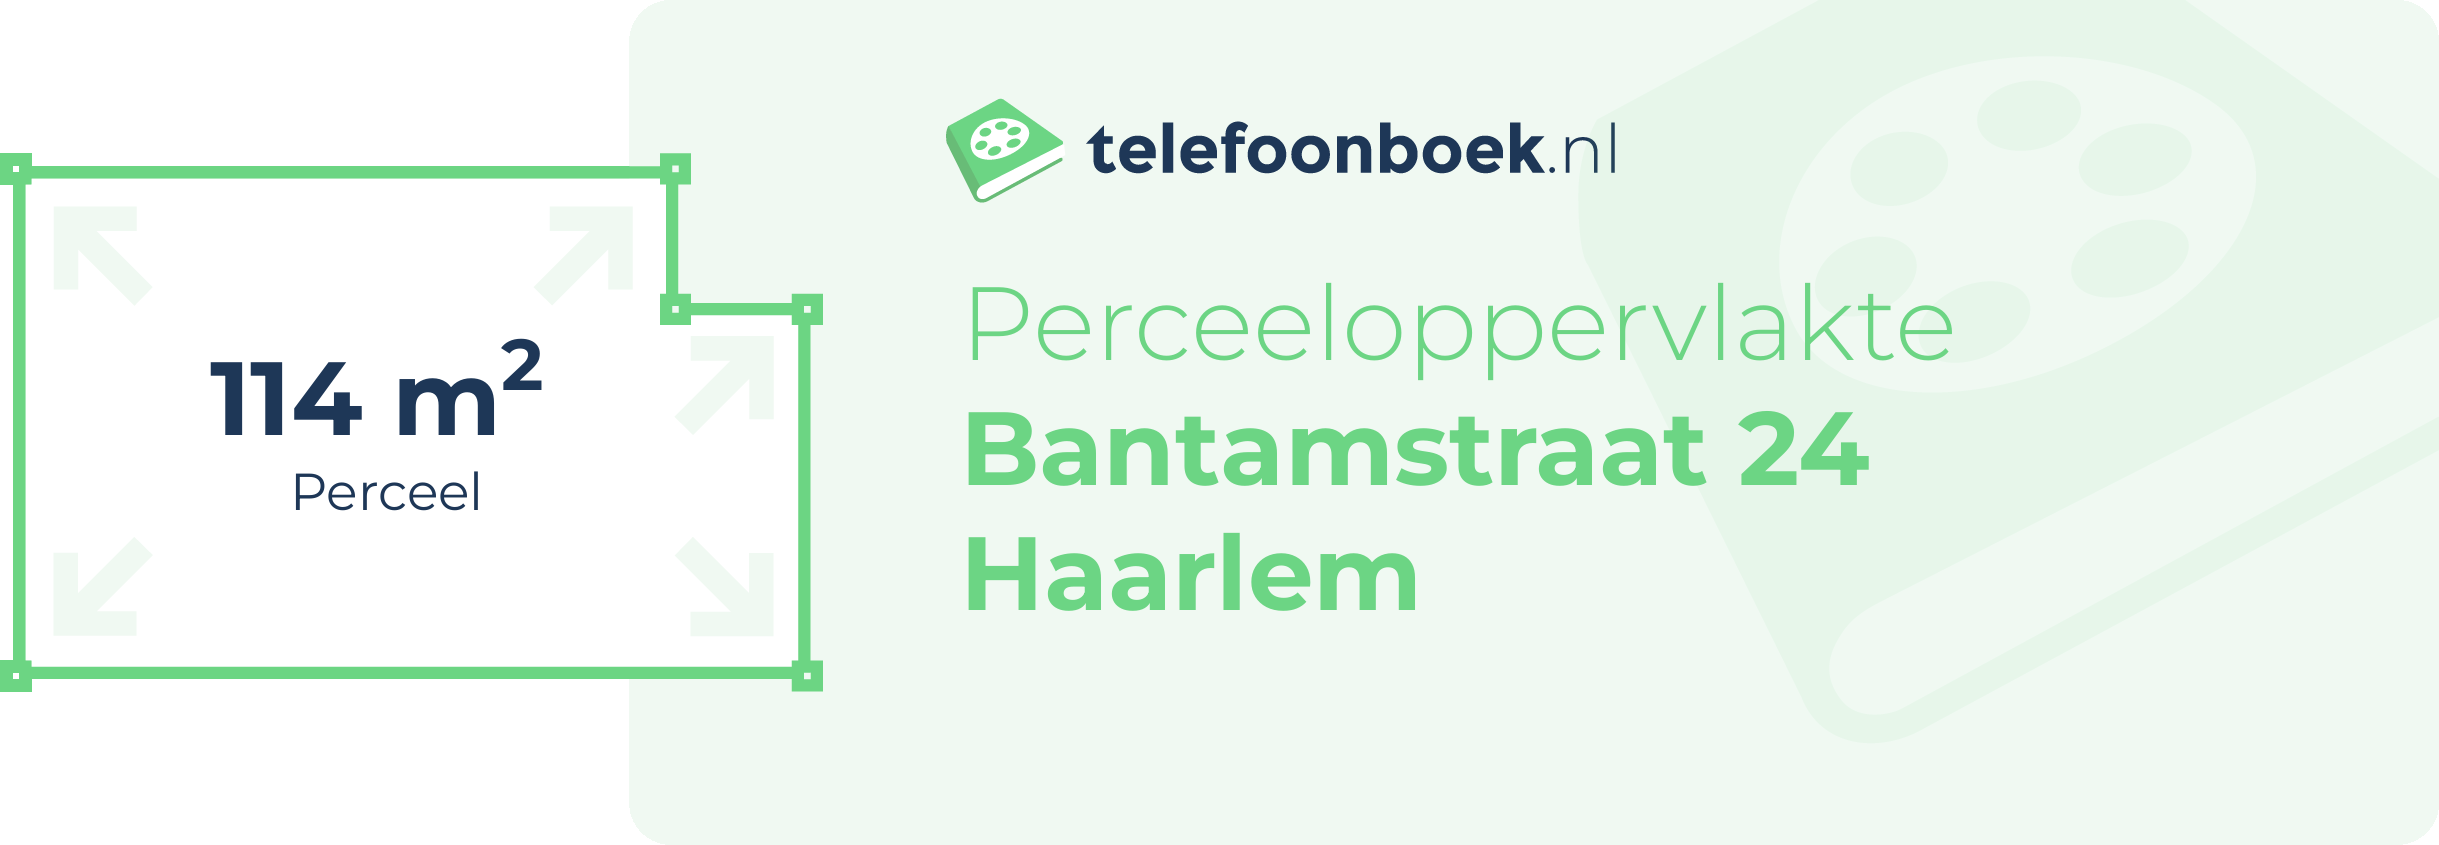 Perceeloppervlakte Bantamstraat 24 Haarlem